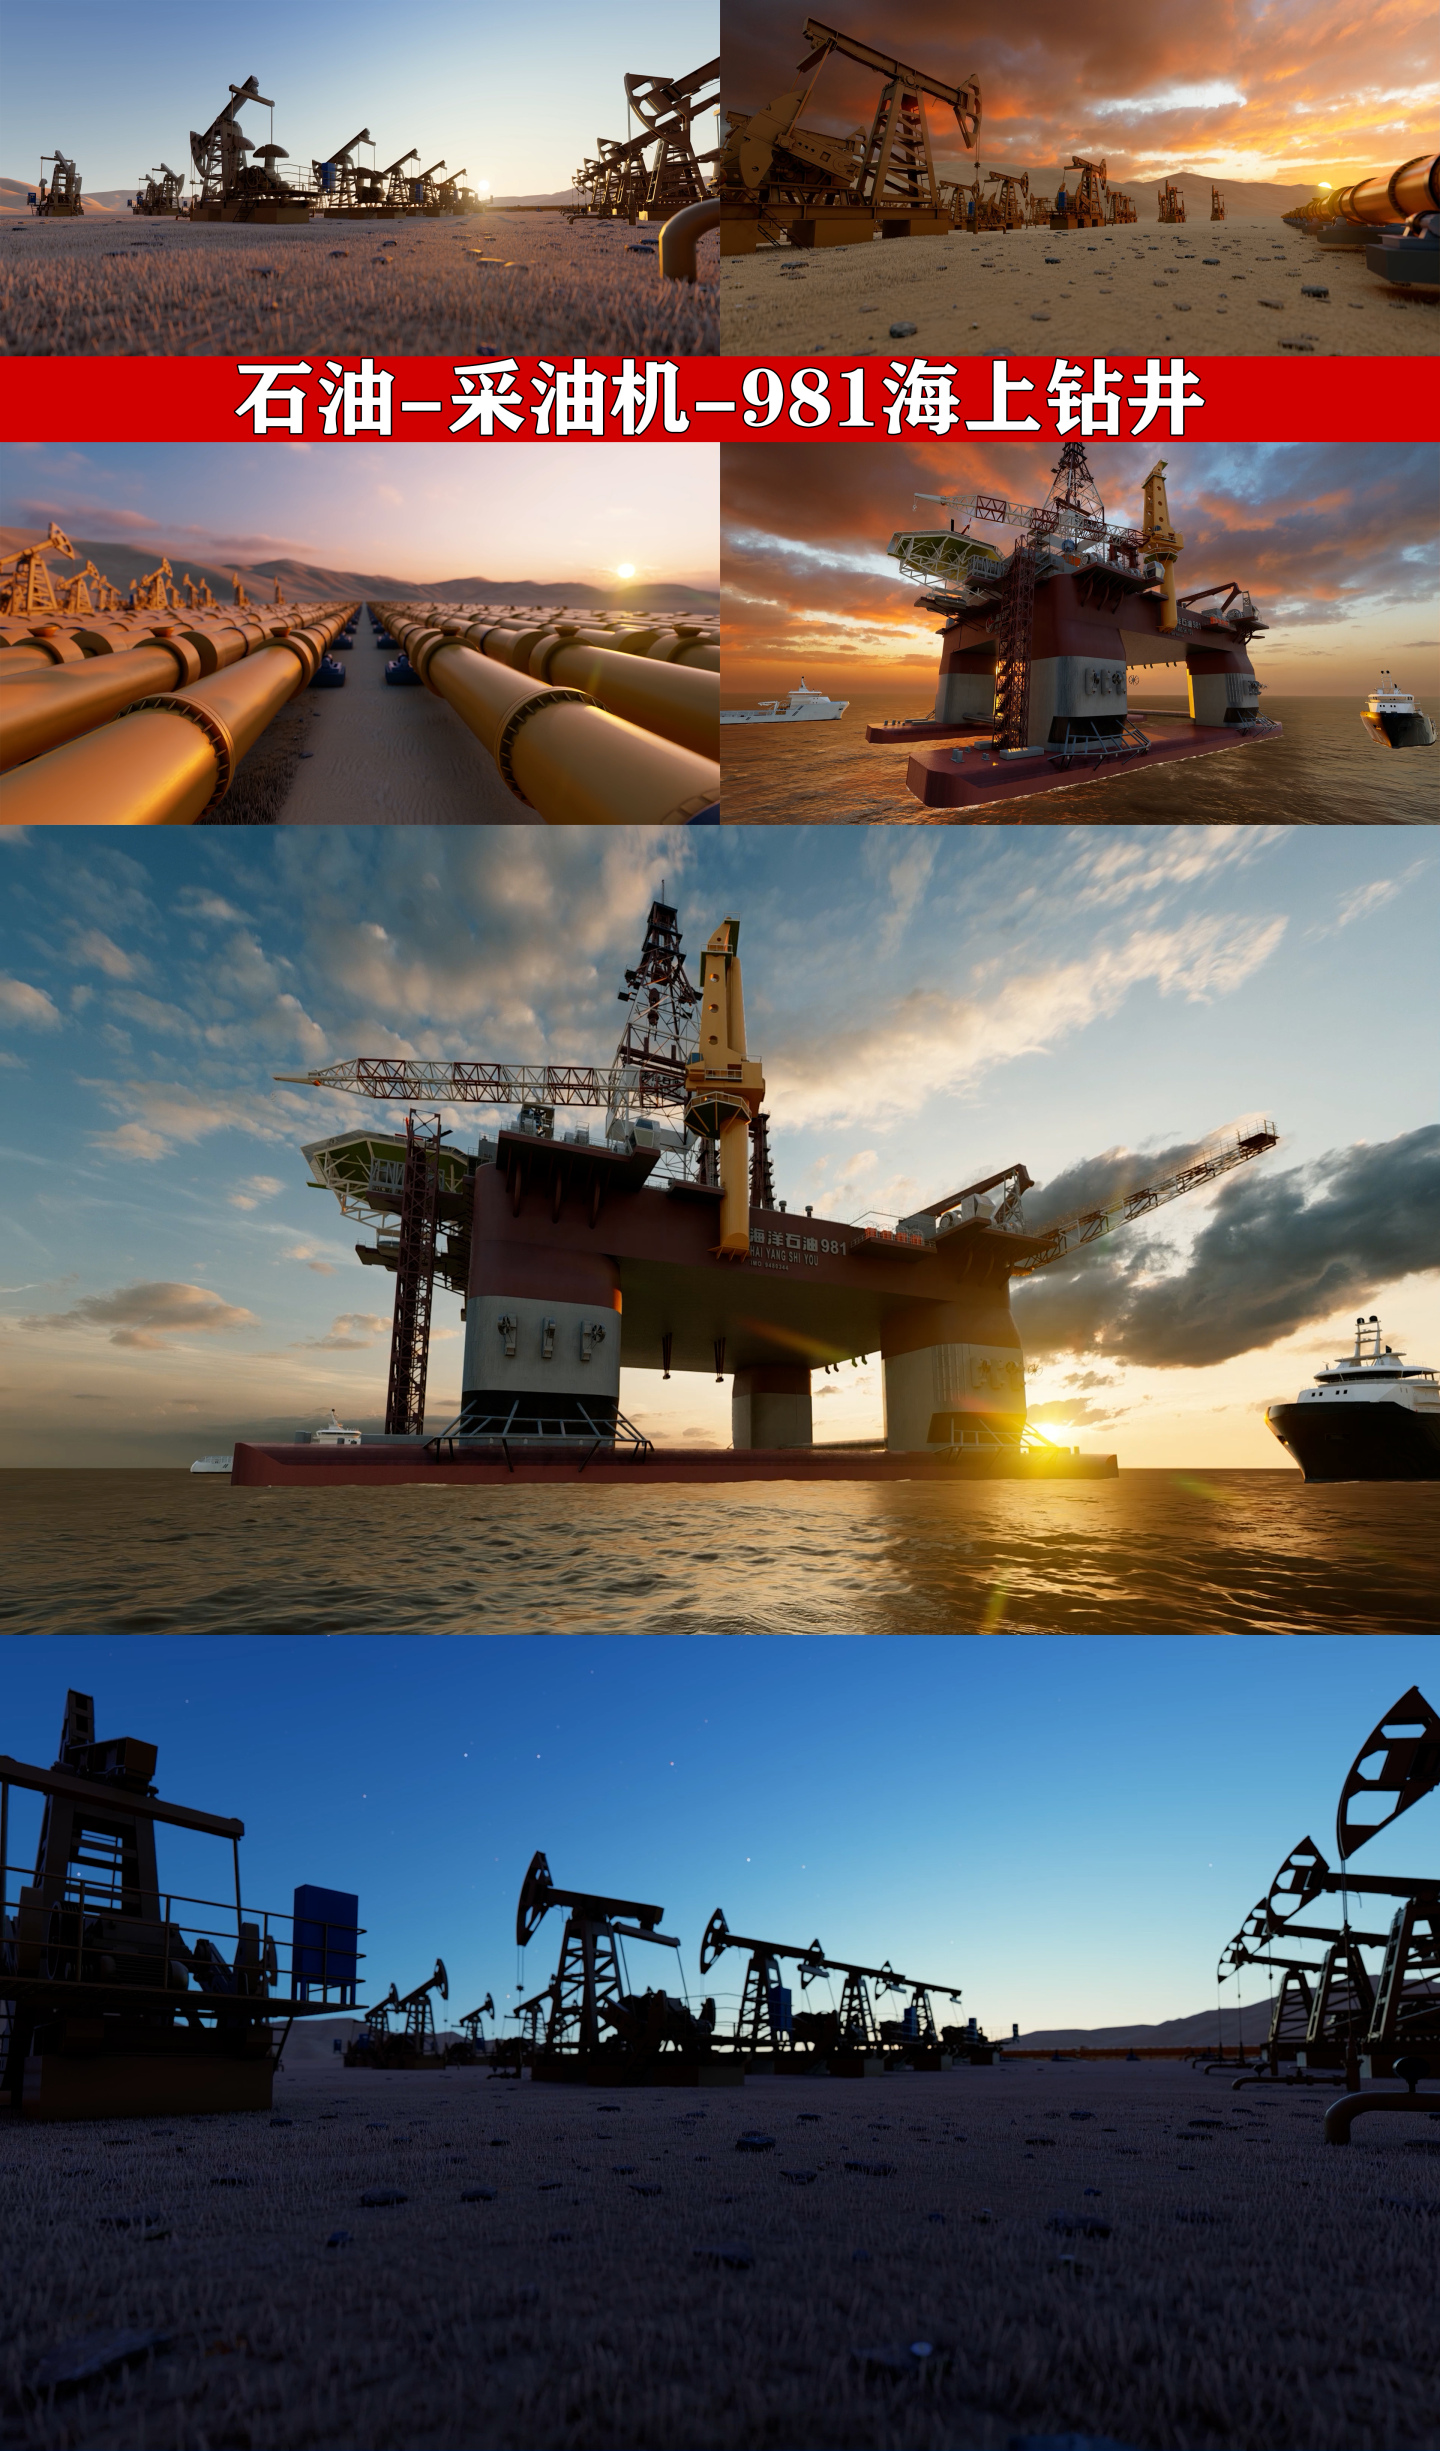 石油天然气能源勘测开采磕头机海上平台